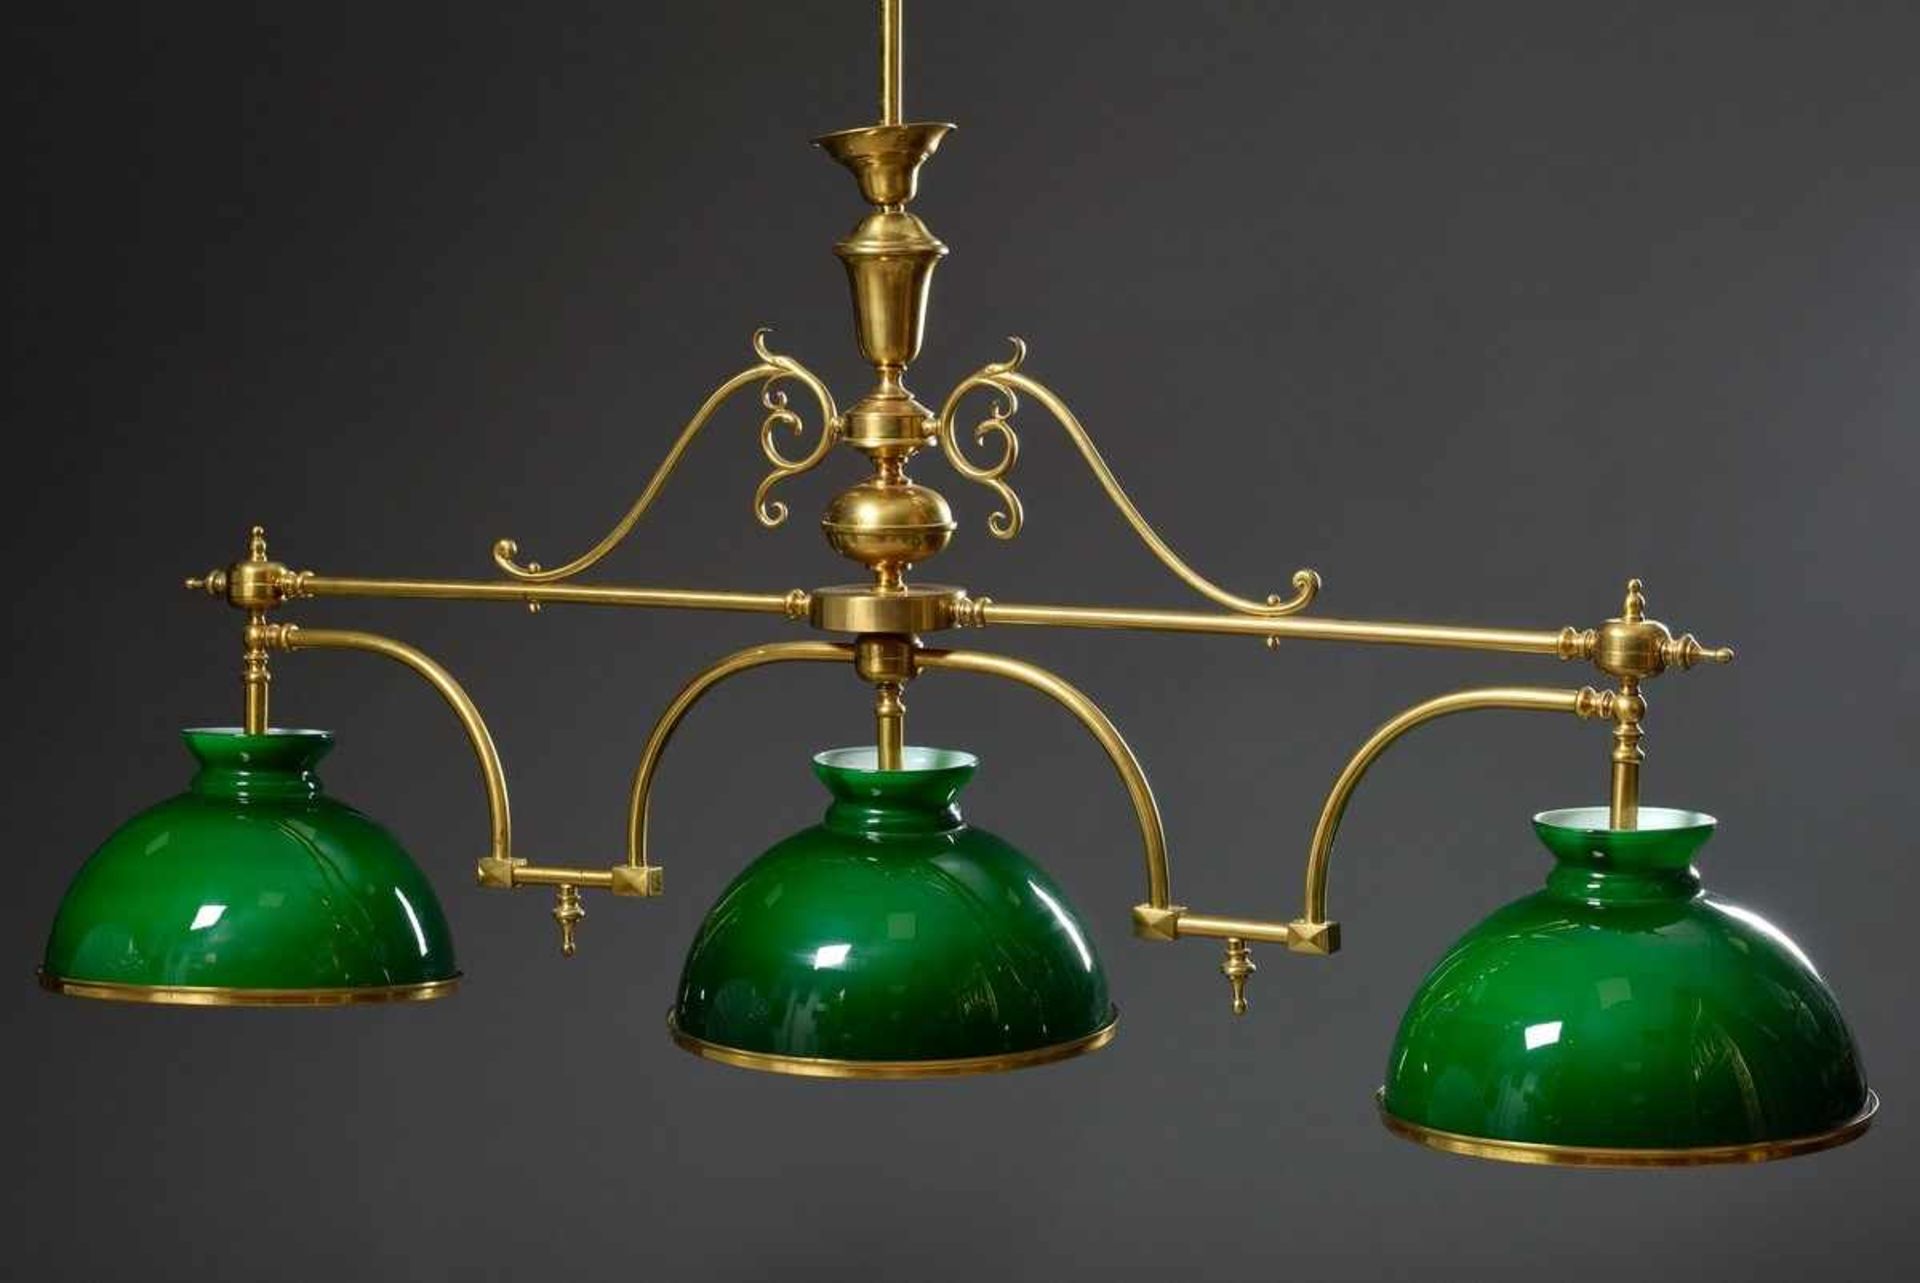 Englische Messing Billard Lampe mit drei grünen Glasschirmen, 20.Jh., 96x155cmEnglish brass billiard